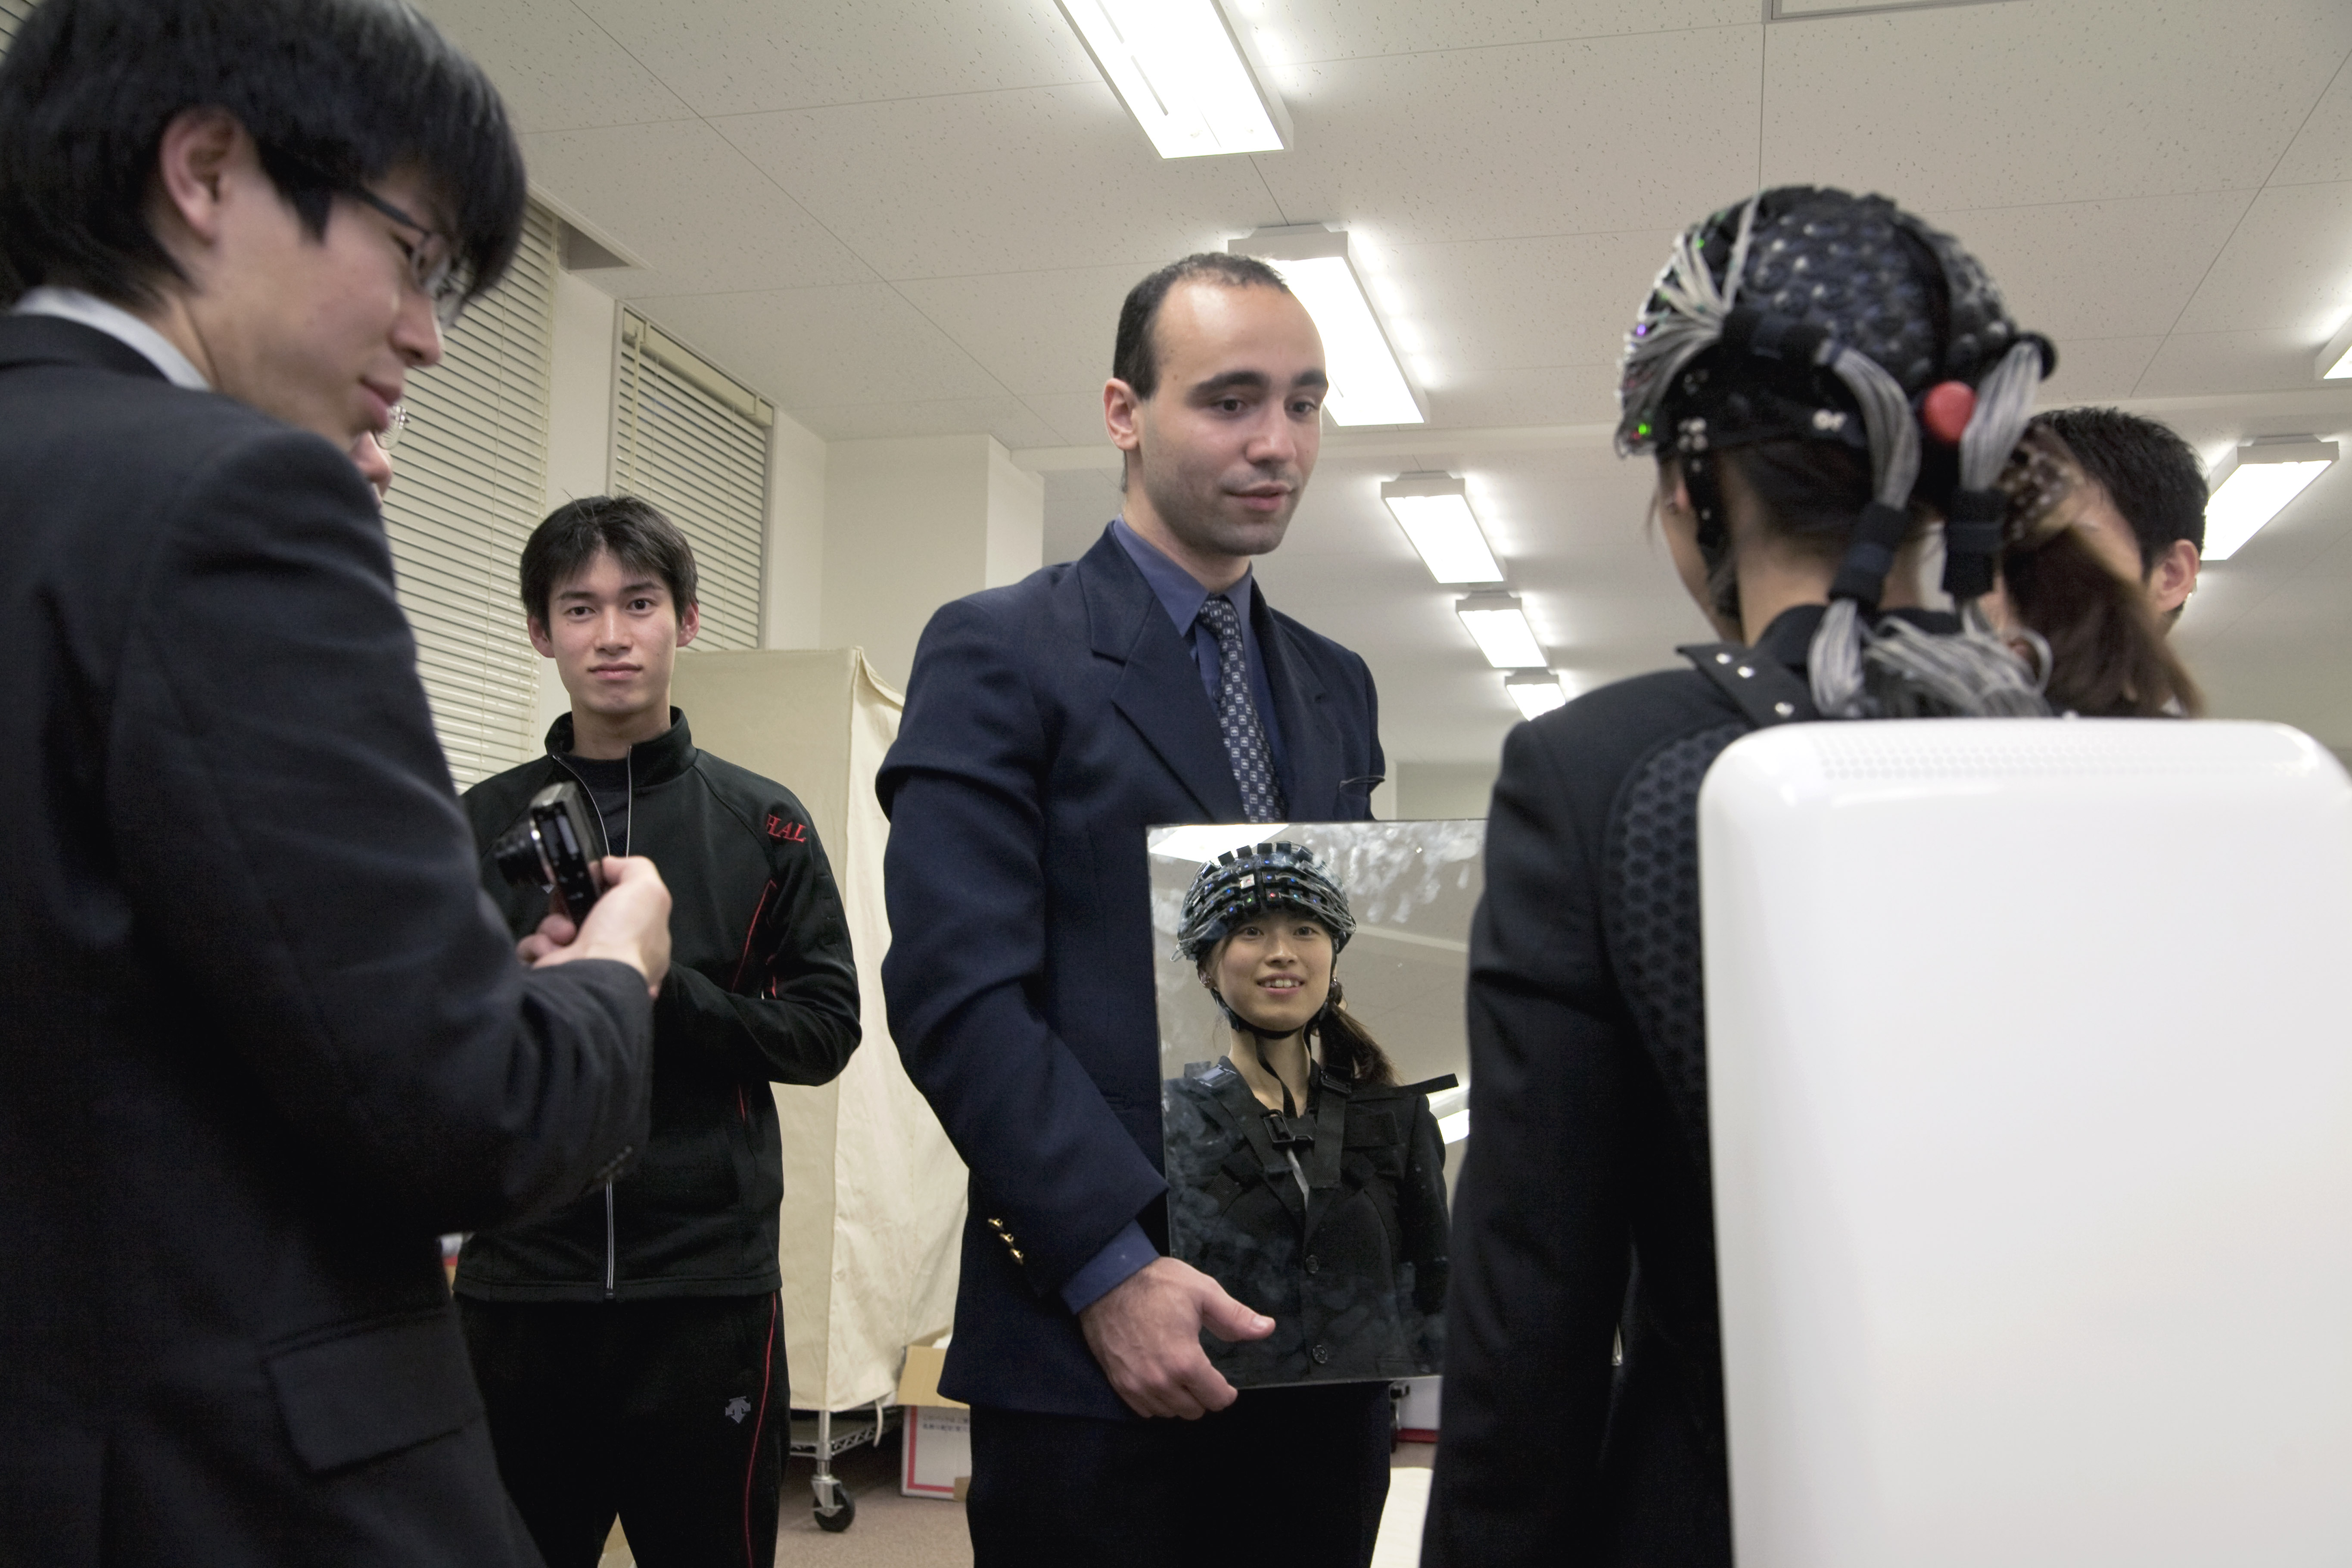 Le Professeur Sankai présente à la presse son nouveau projet d'exosquelette avec veille médicale incorporée. Departement de Cybertronics université de Tsukuba japon.